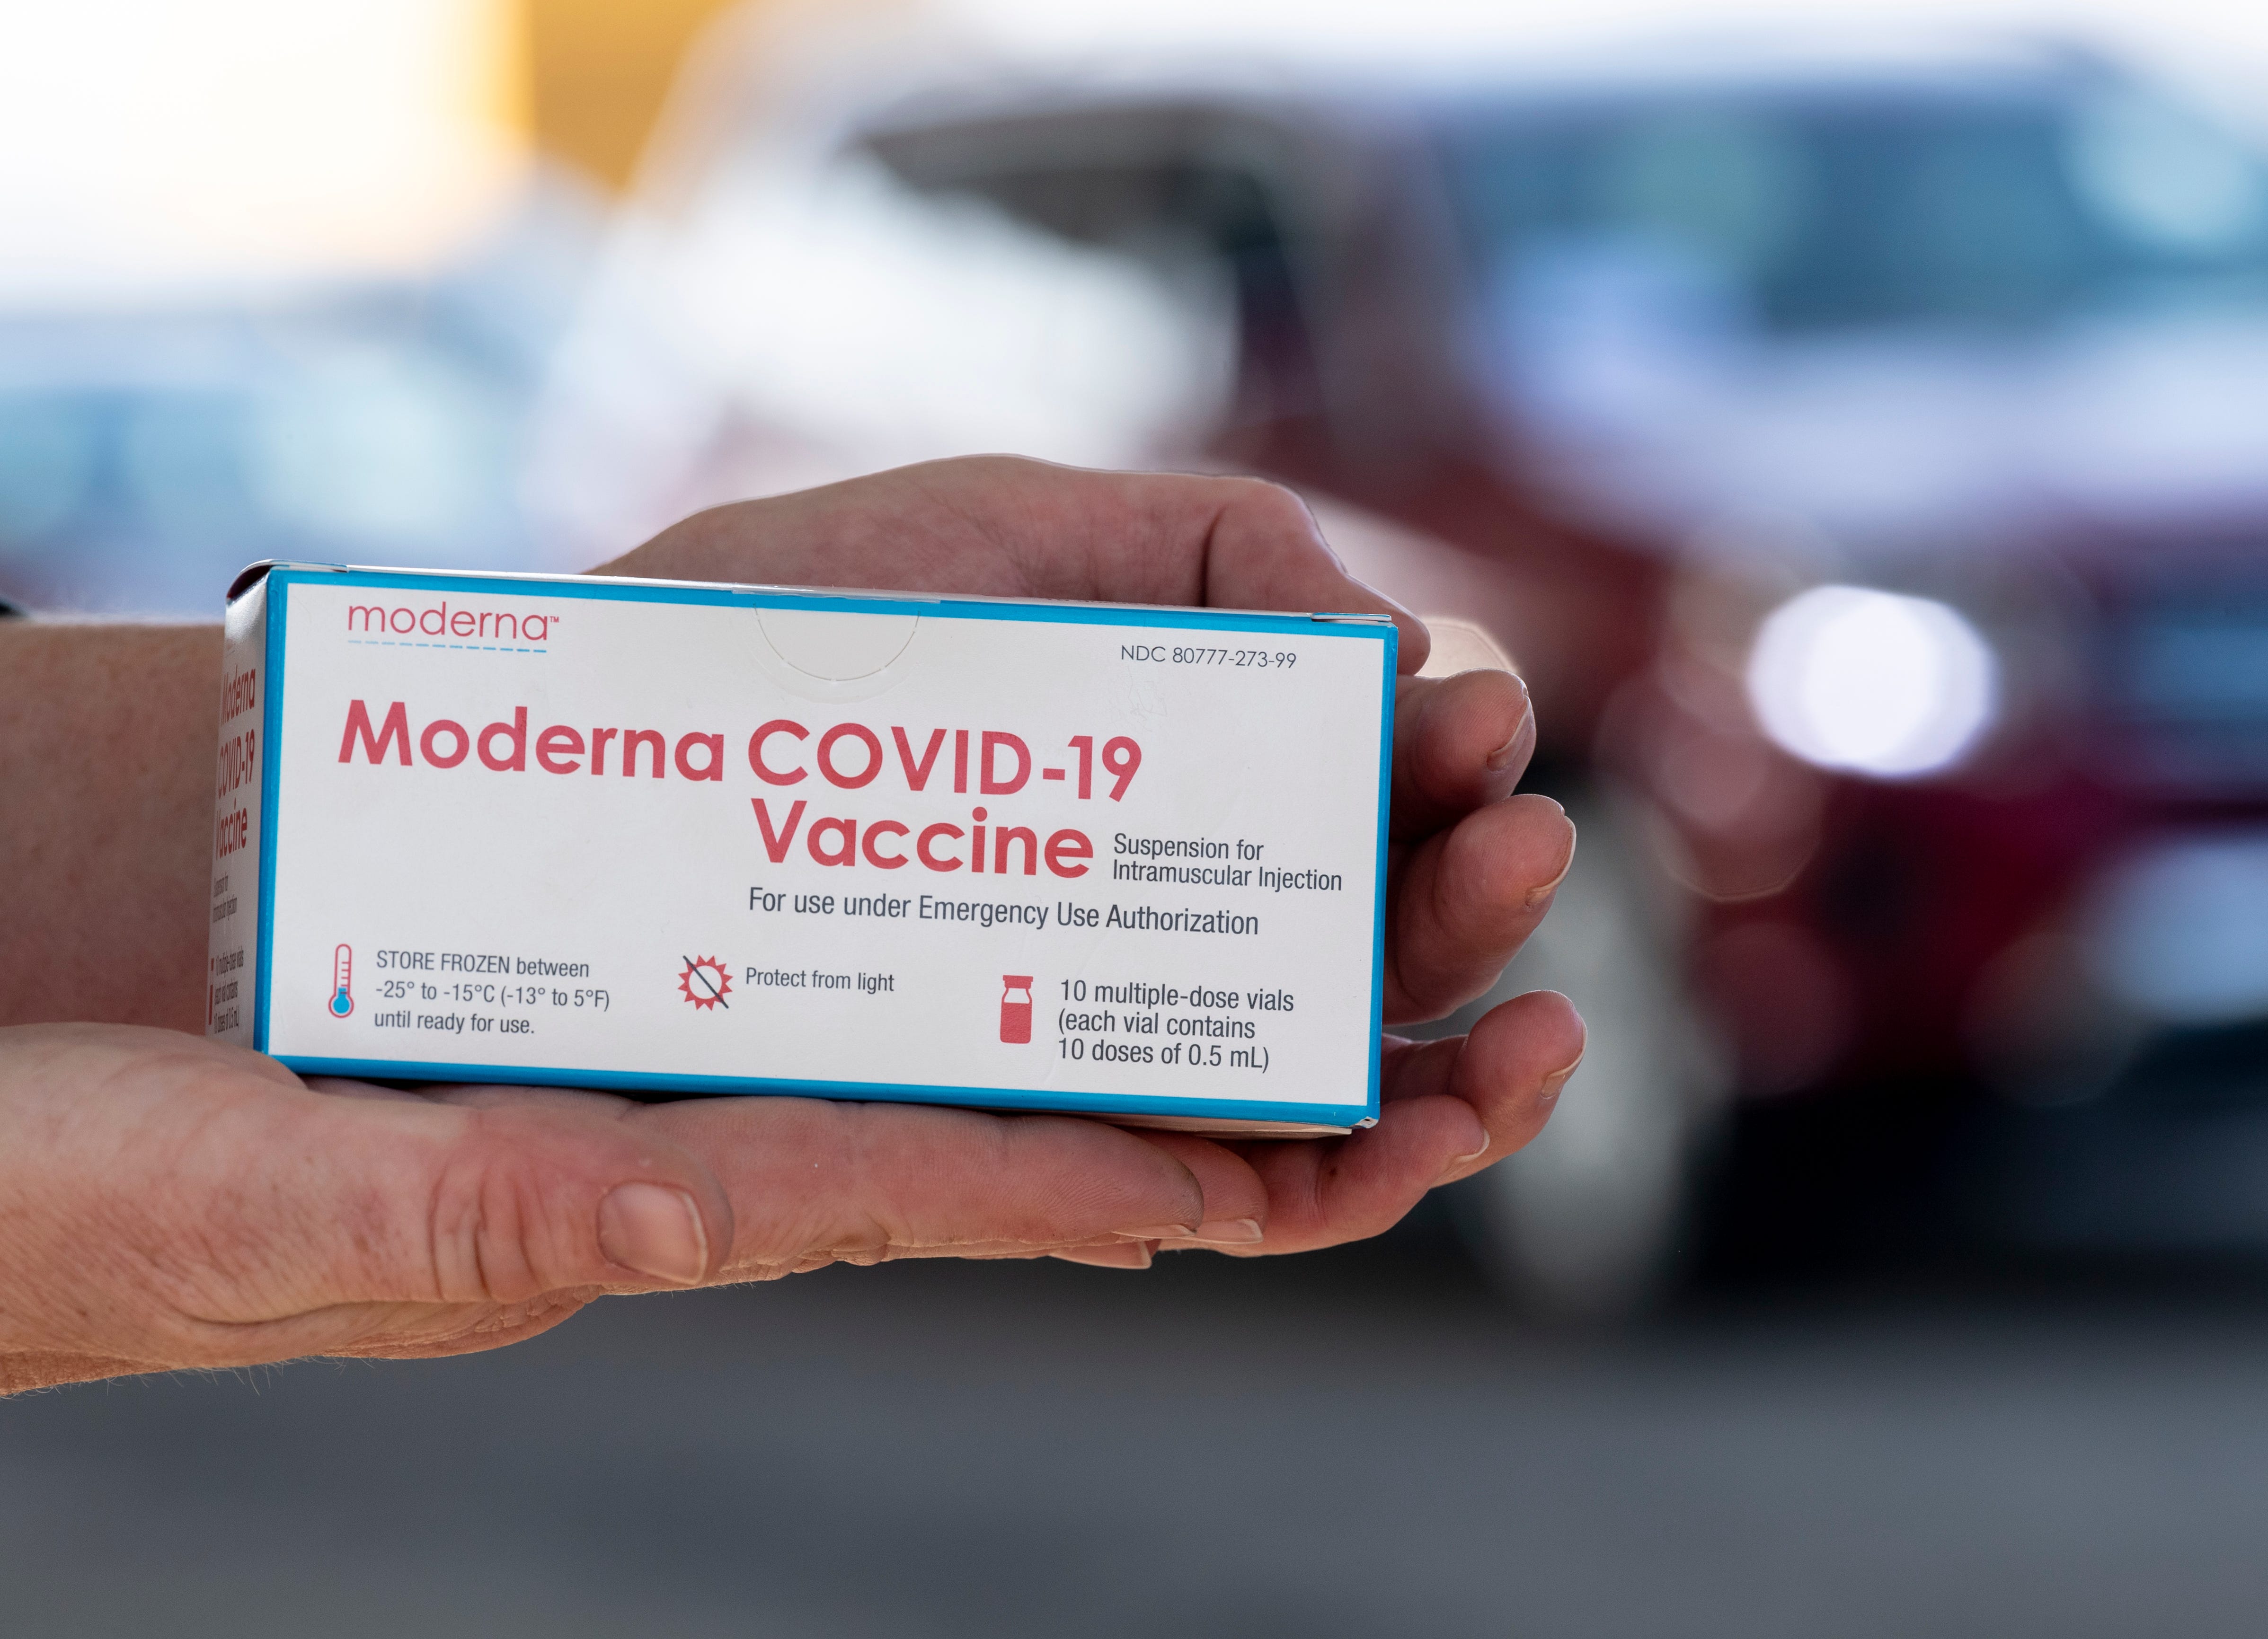 moderna covid 19 vaccine production capacity